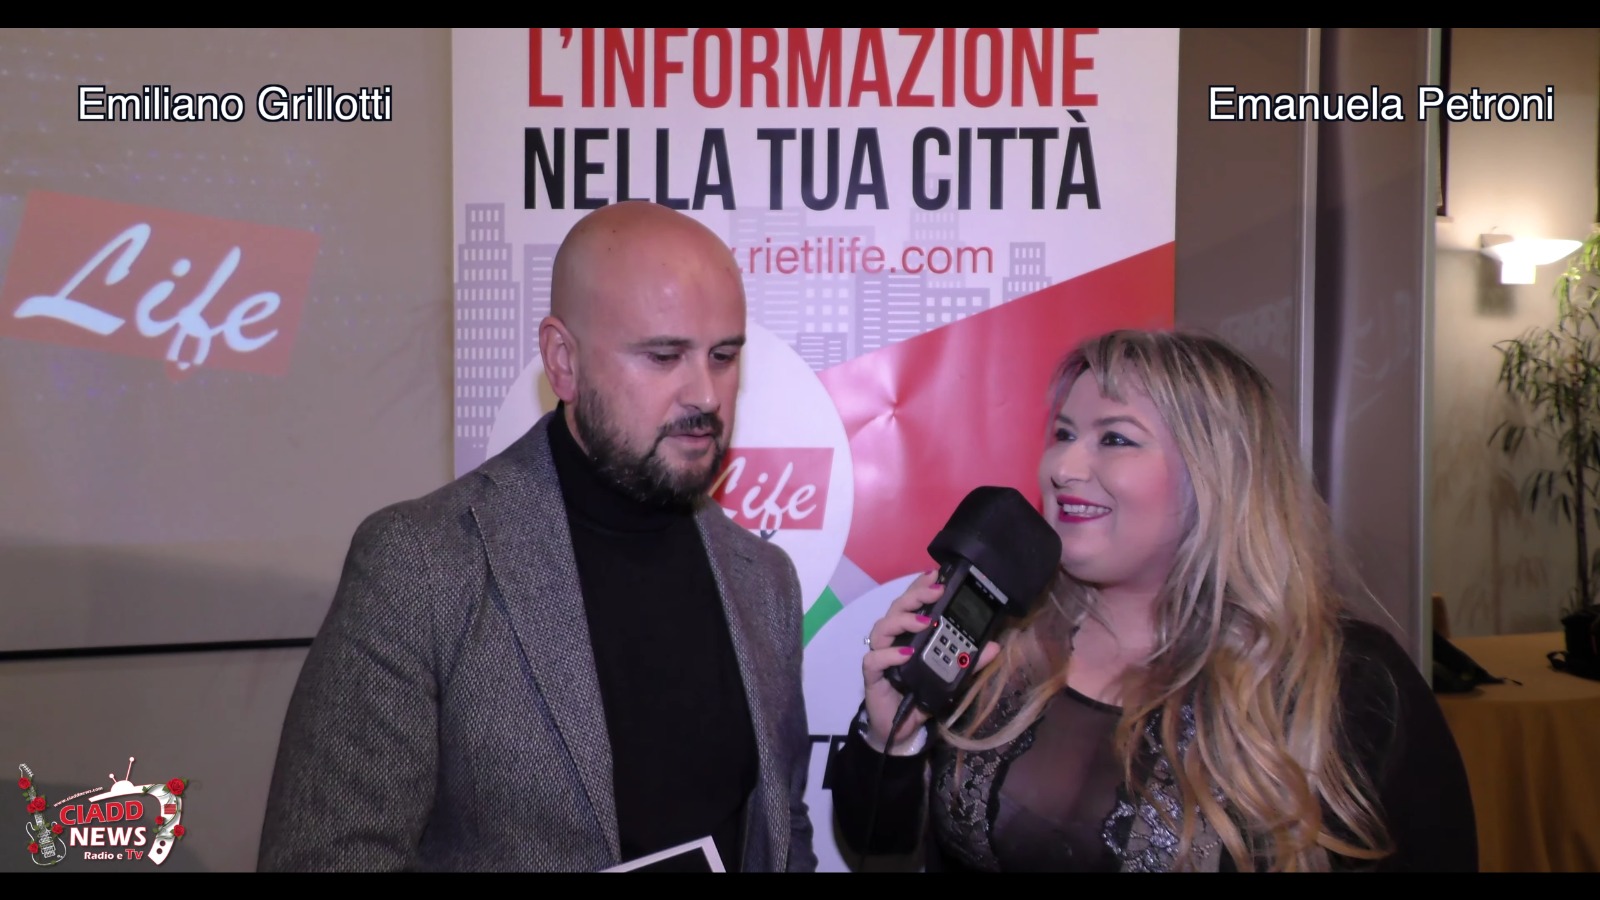 EMILIANO  GRILLOTTI direttore di Rietilife intervistato da Emanuela Petroni in TV su Canale Italia 11